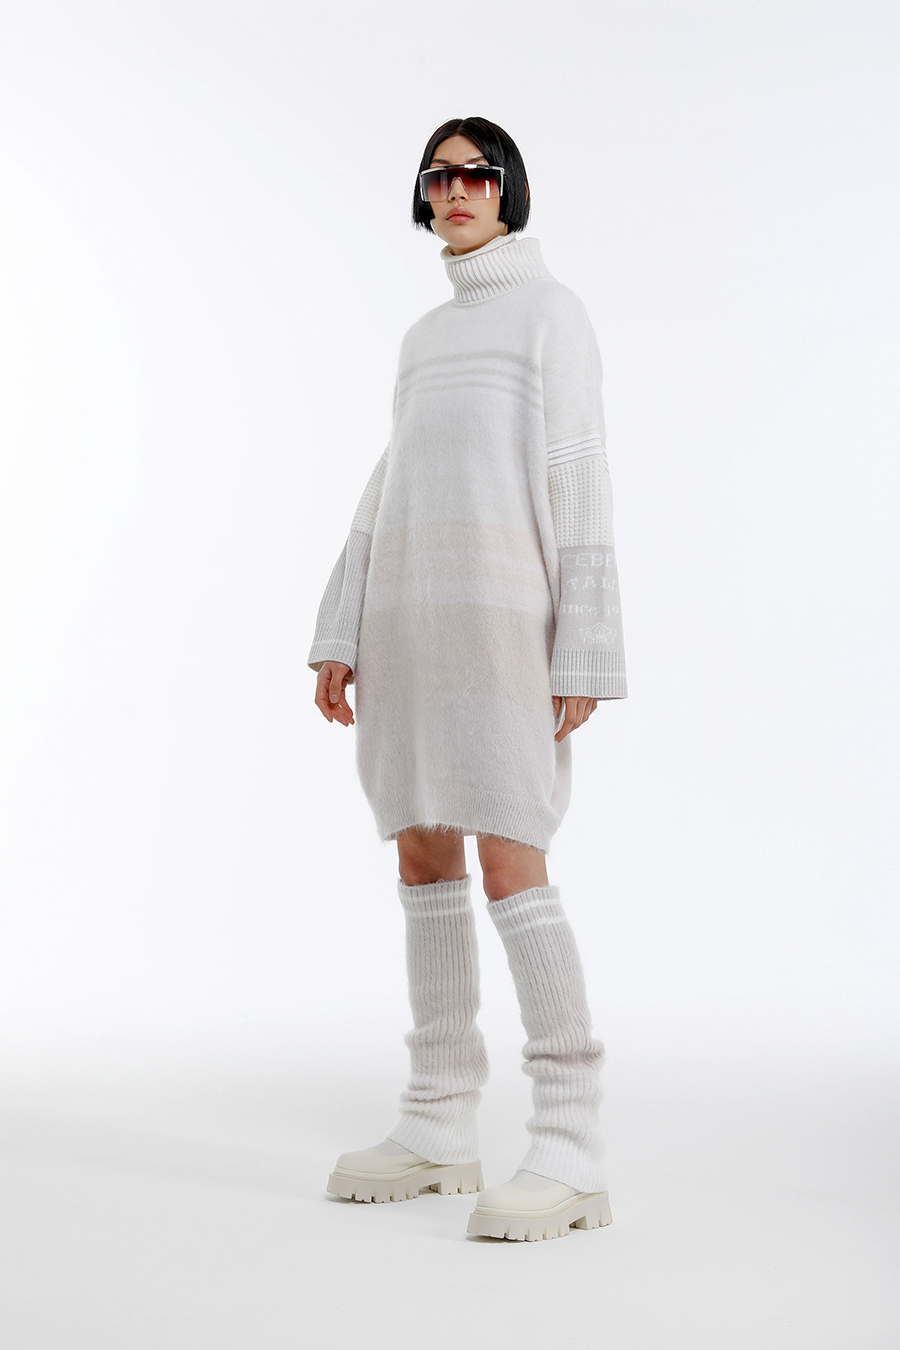 модное платье свитер вязаное трикотажное зима 2021 2022